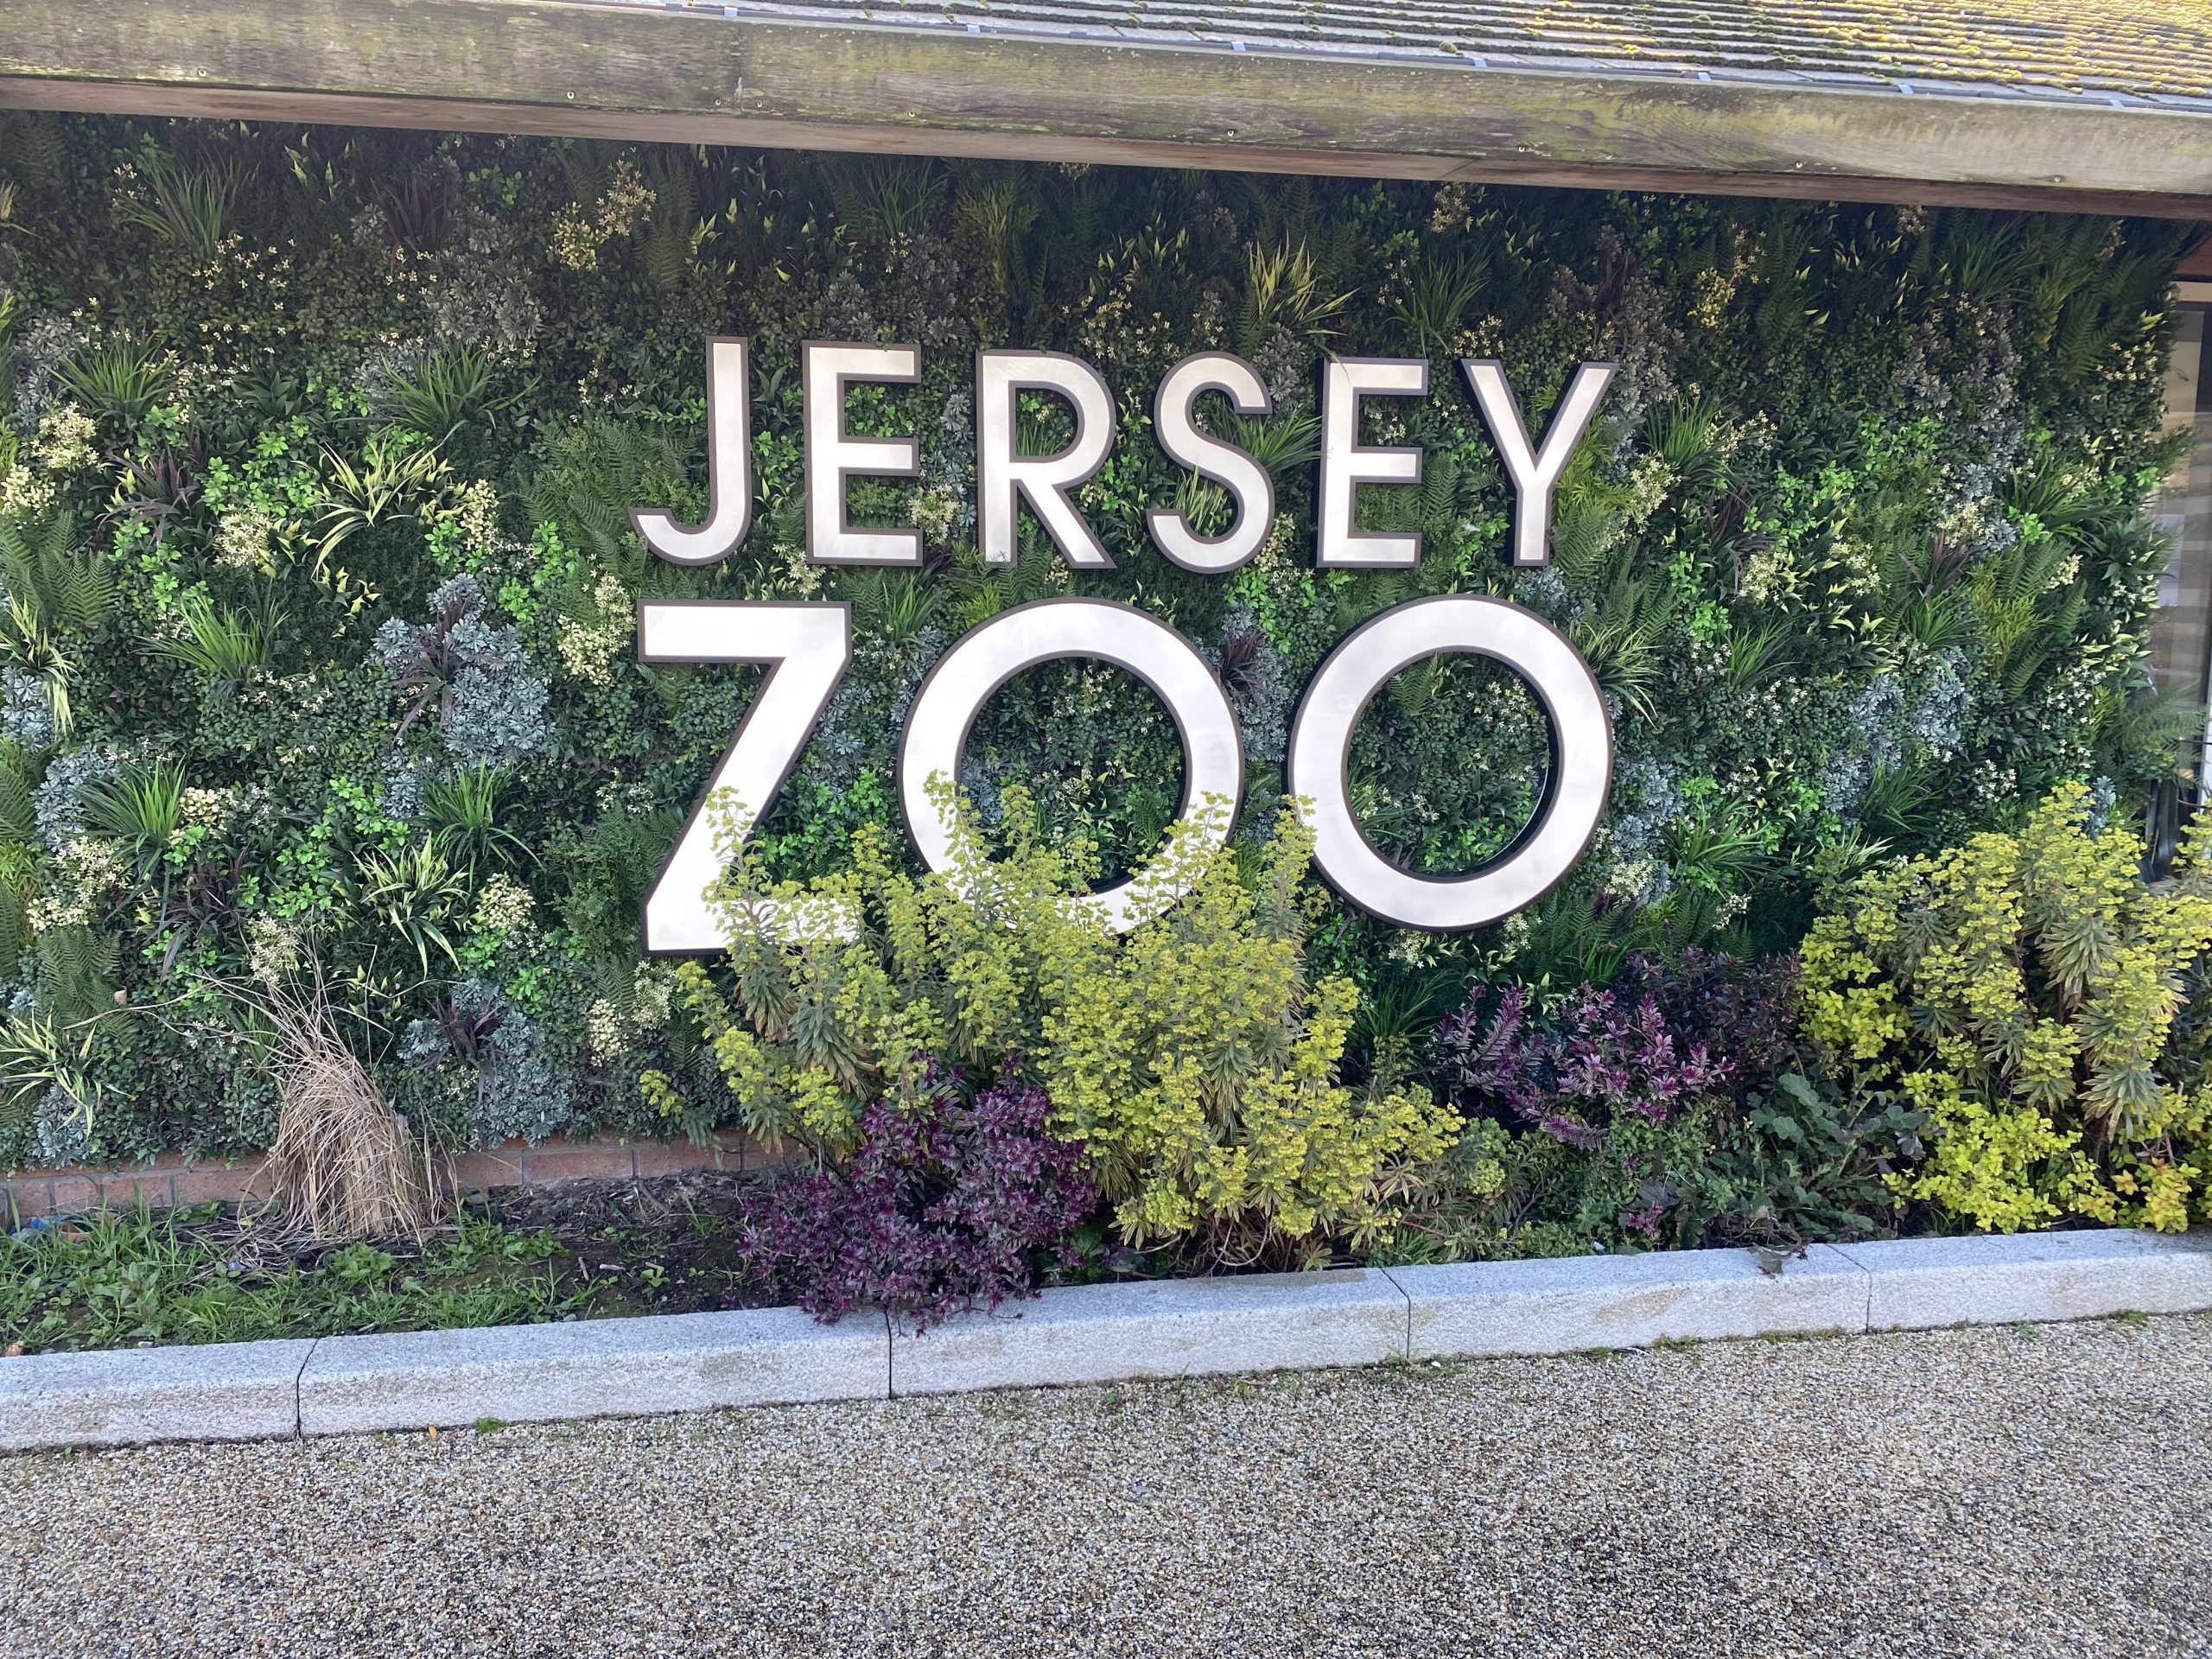 TB+A take a trip to Jersey Zoo!